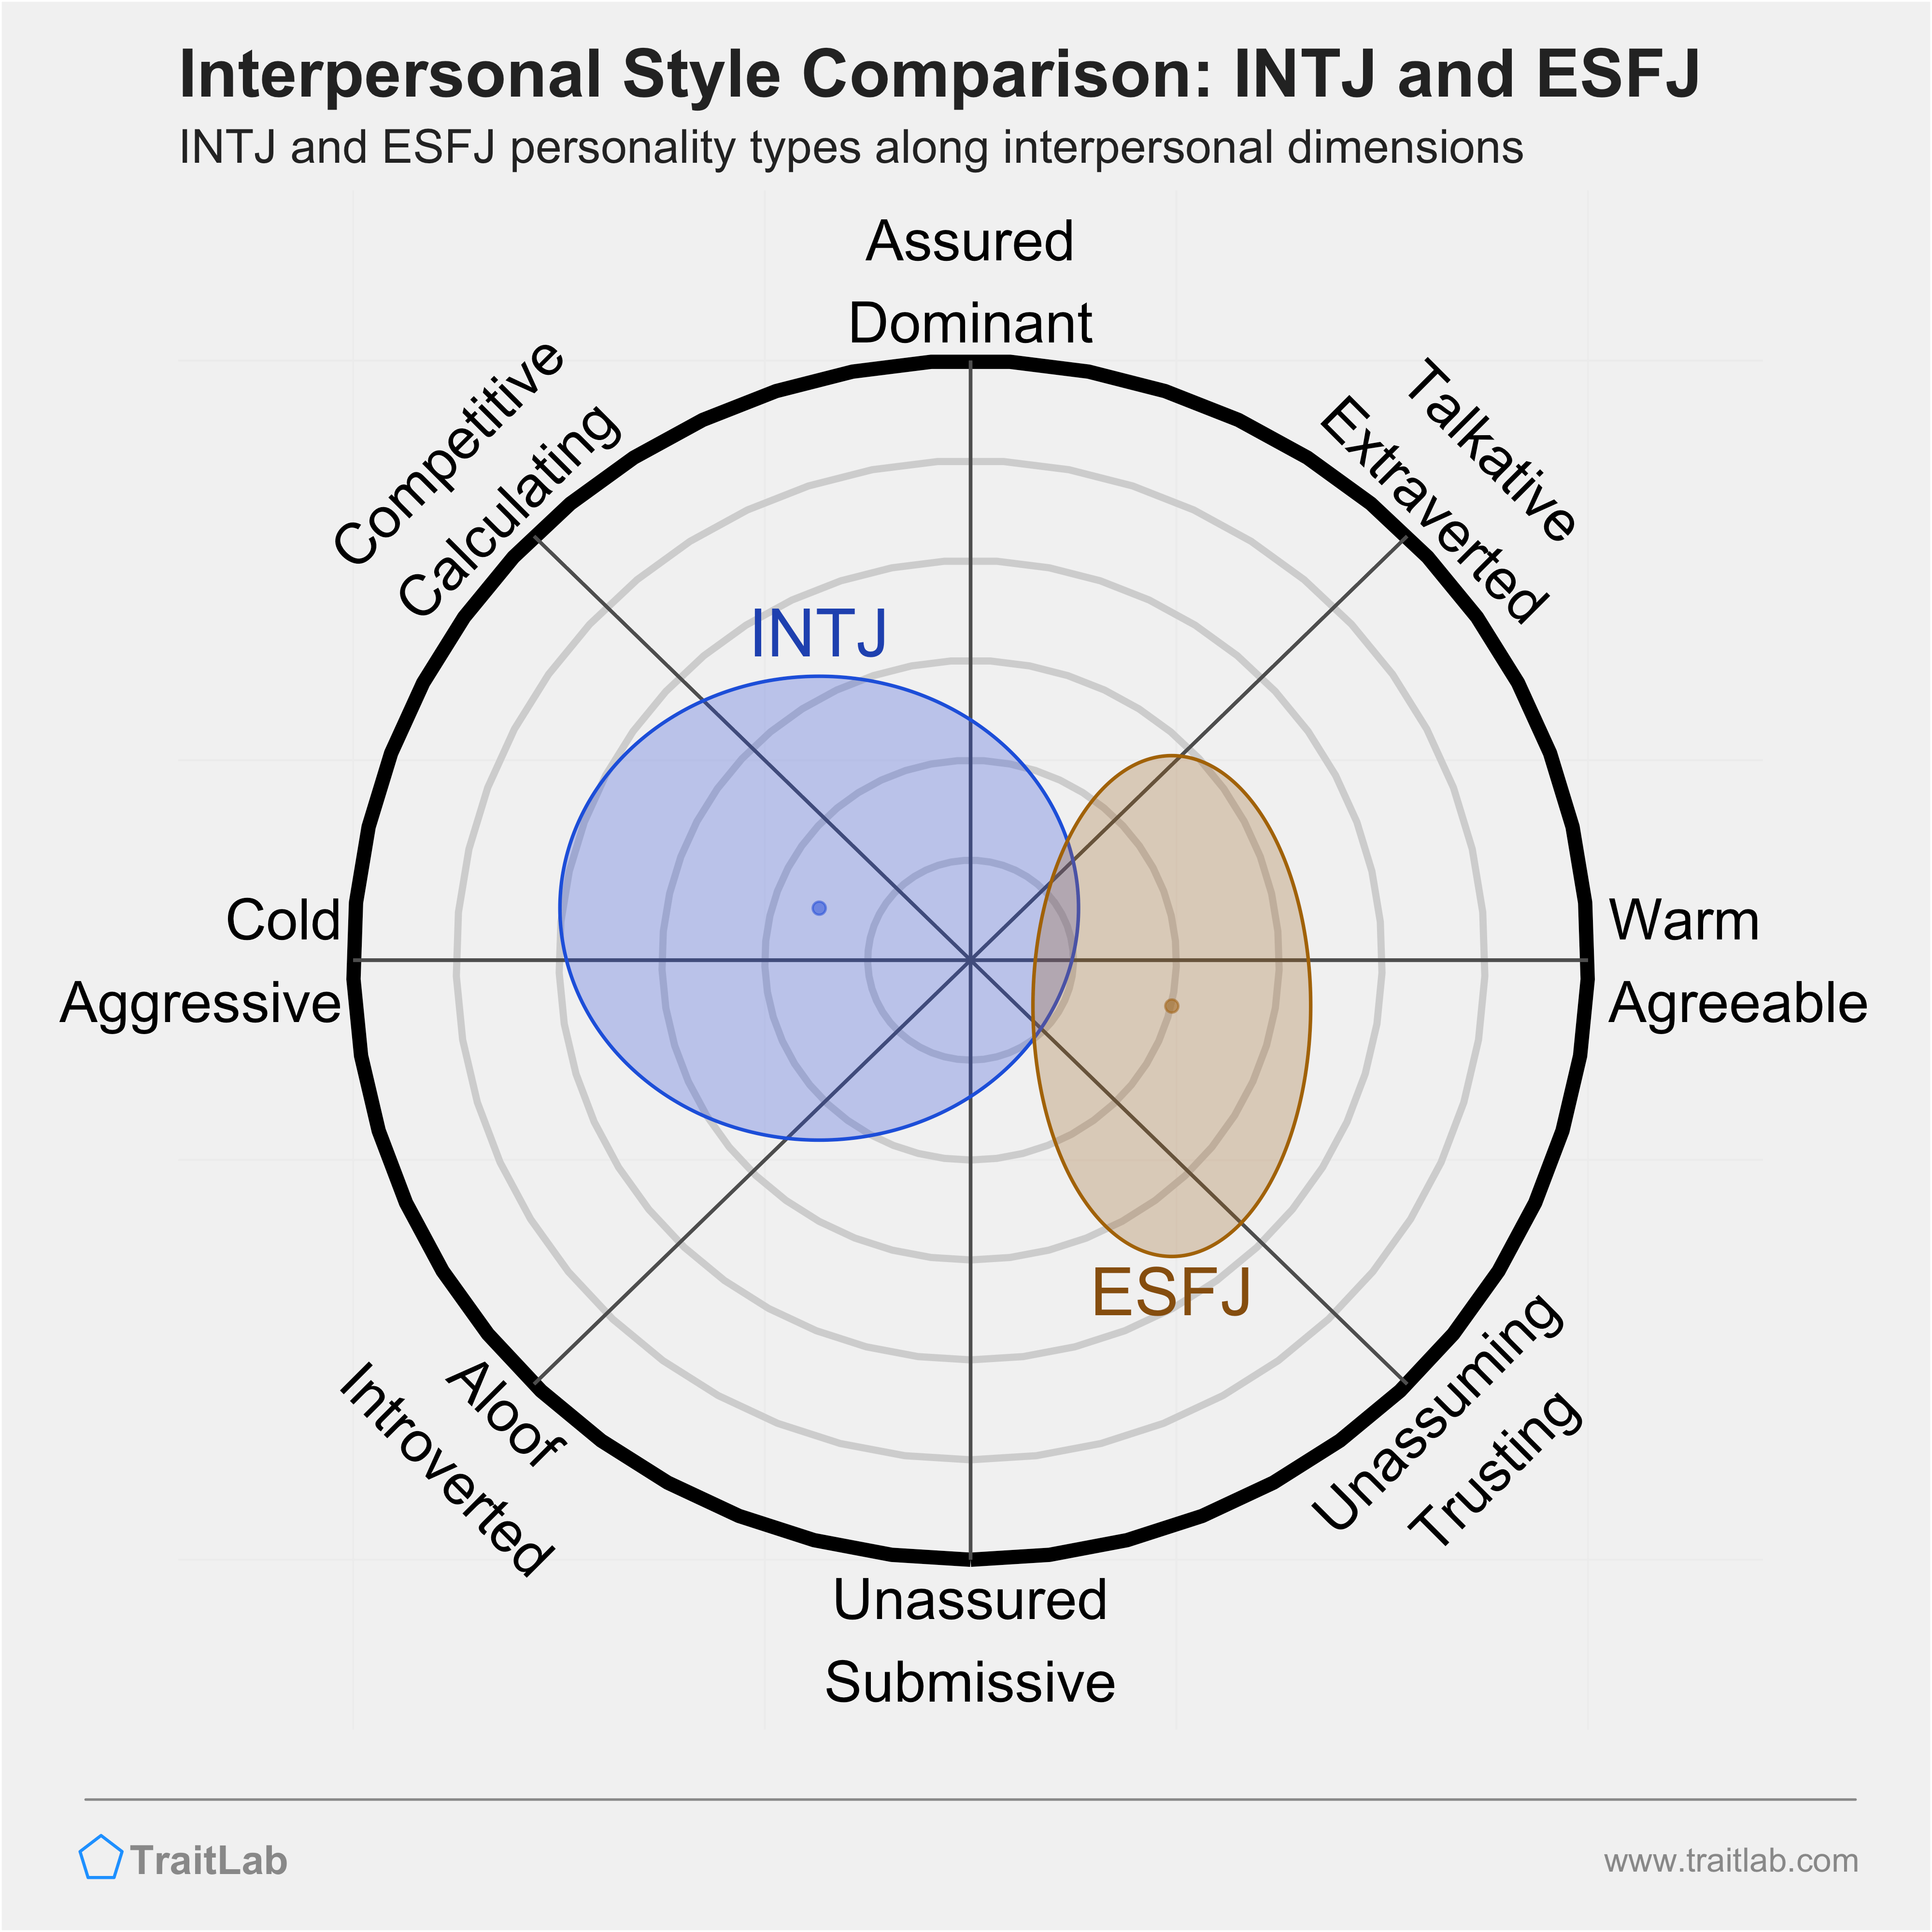 INTJ and ESFJ comparison across interpersonal dimensions